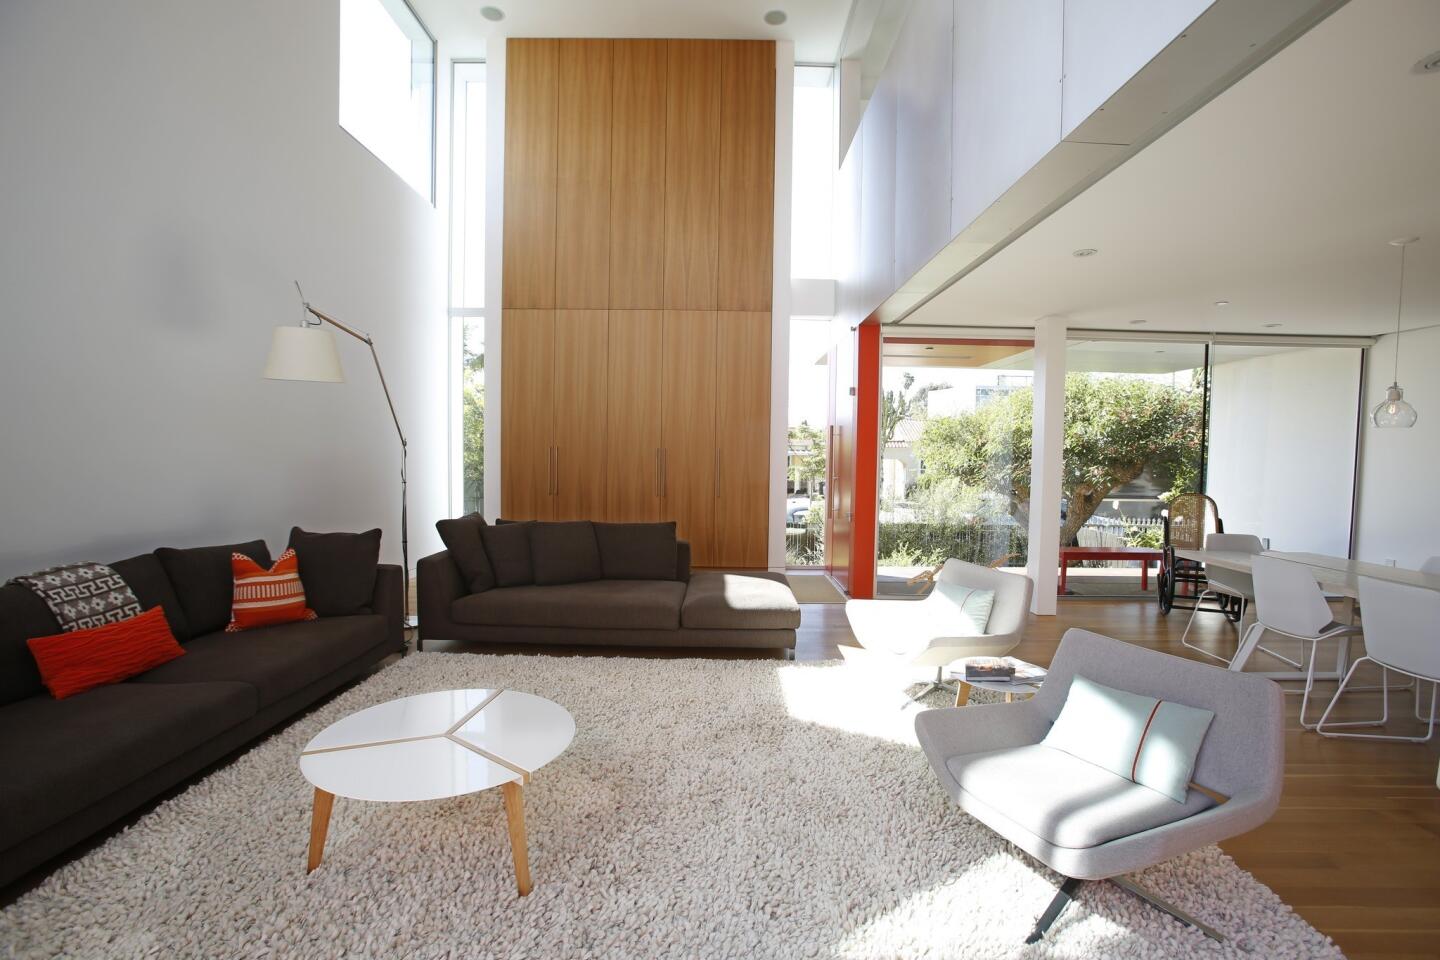 California Poppy House: living room